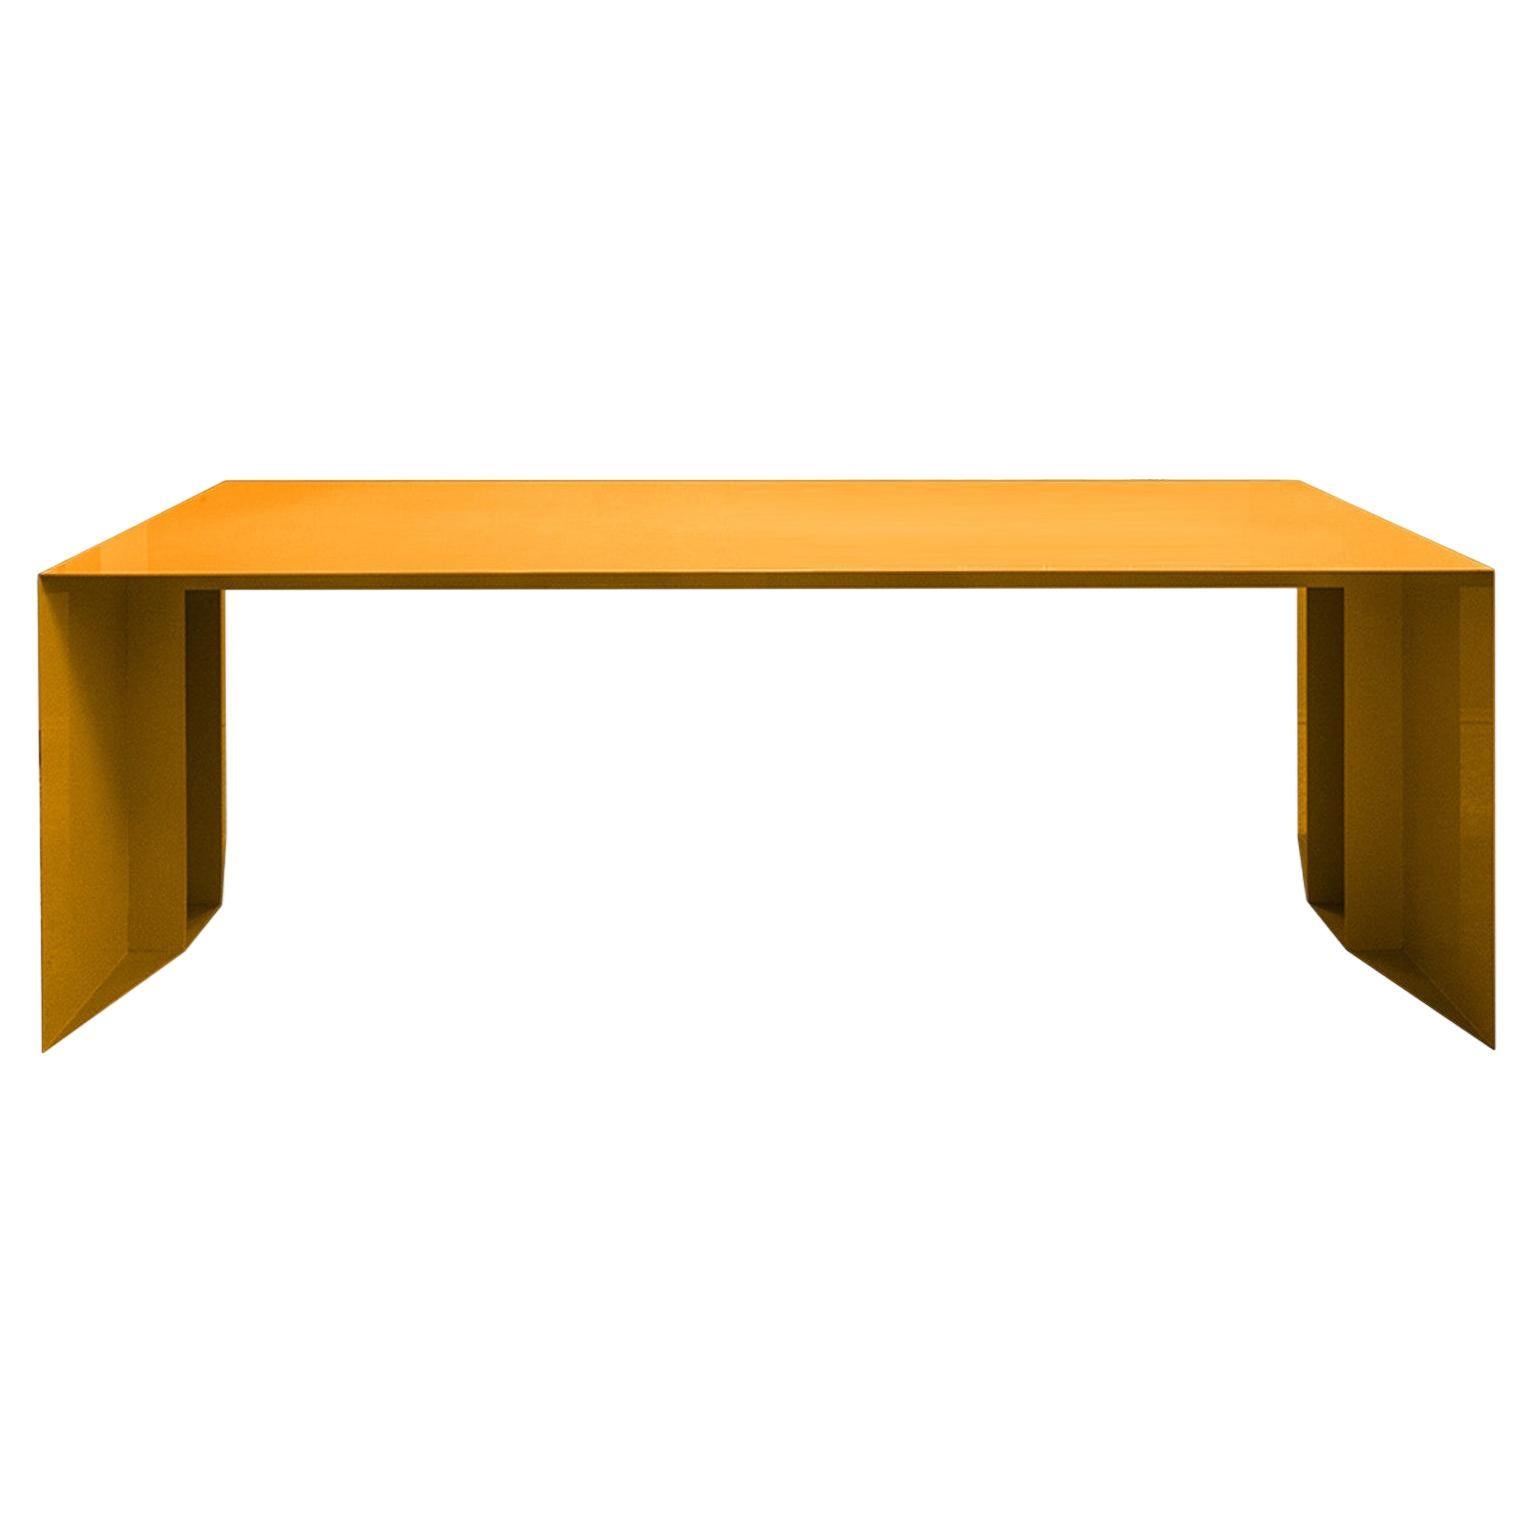 S3 Table by Secondome Edizioni